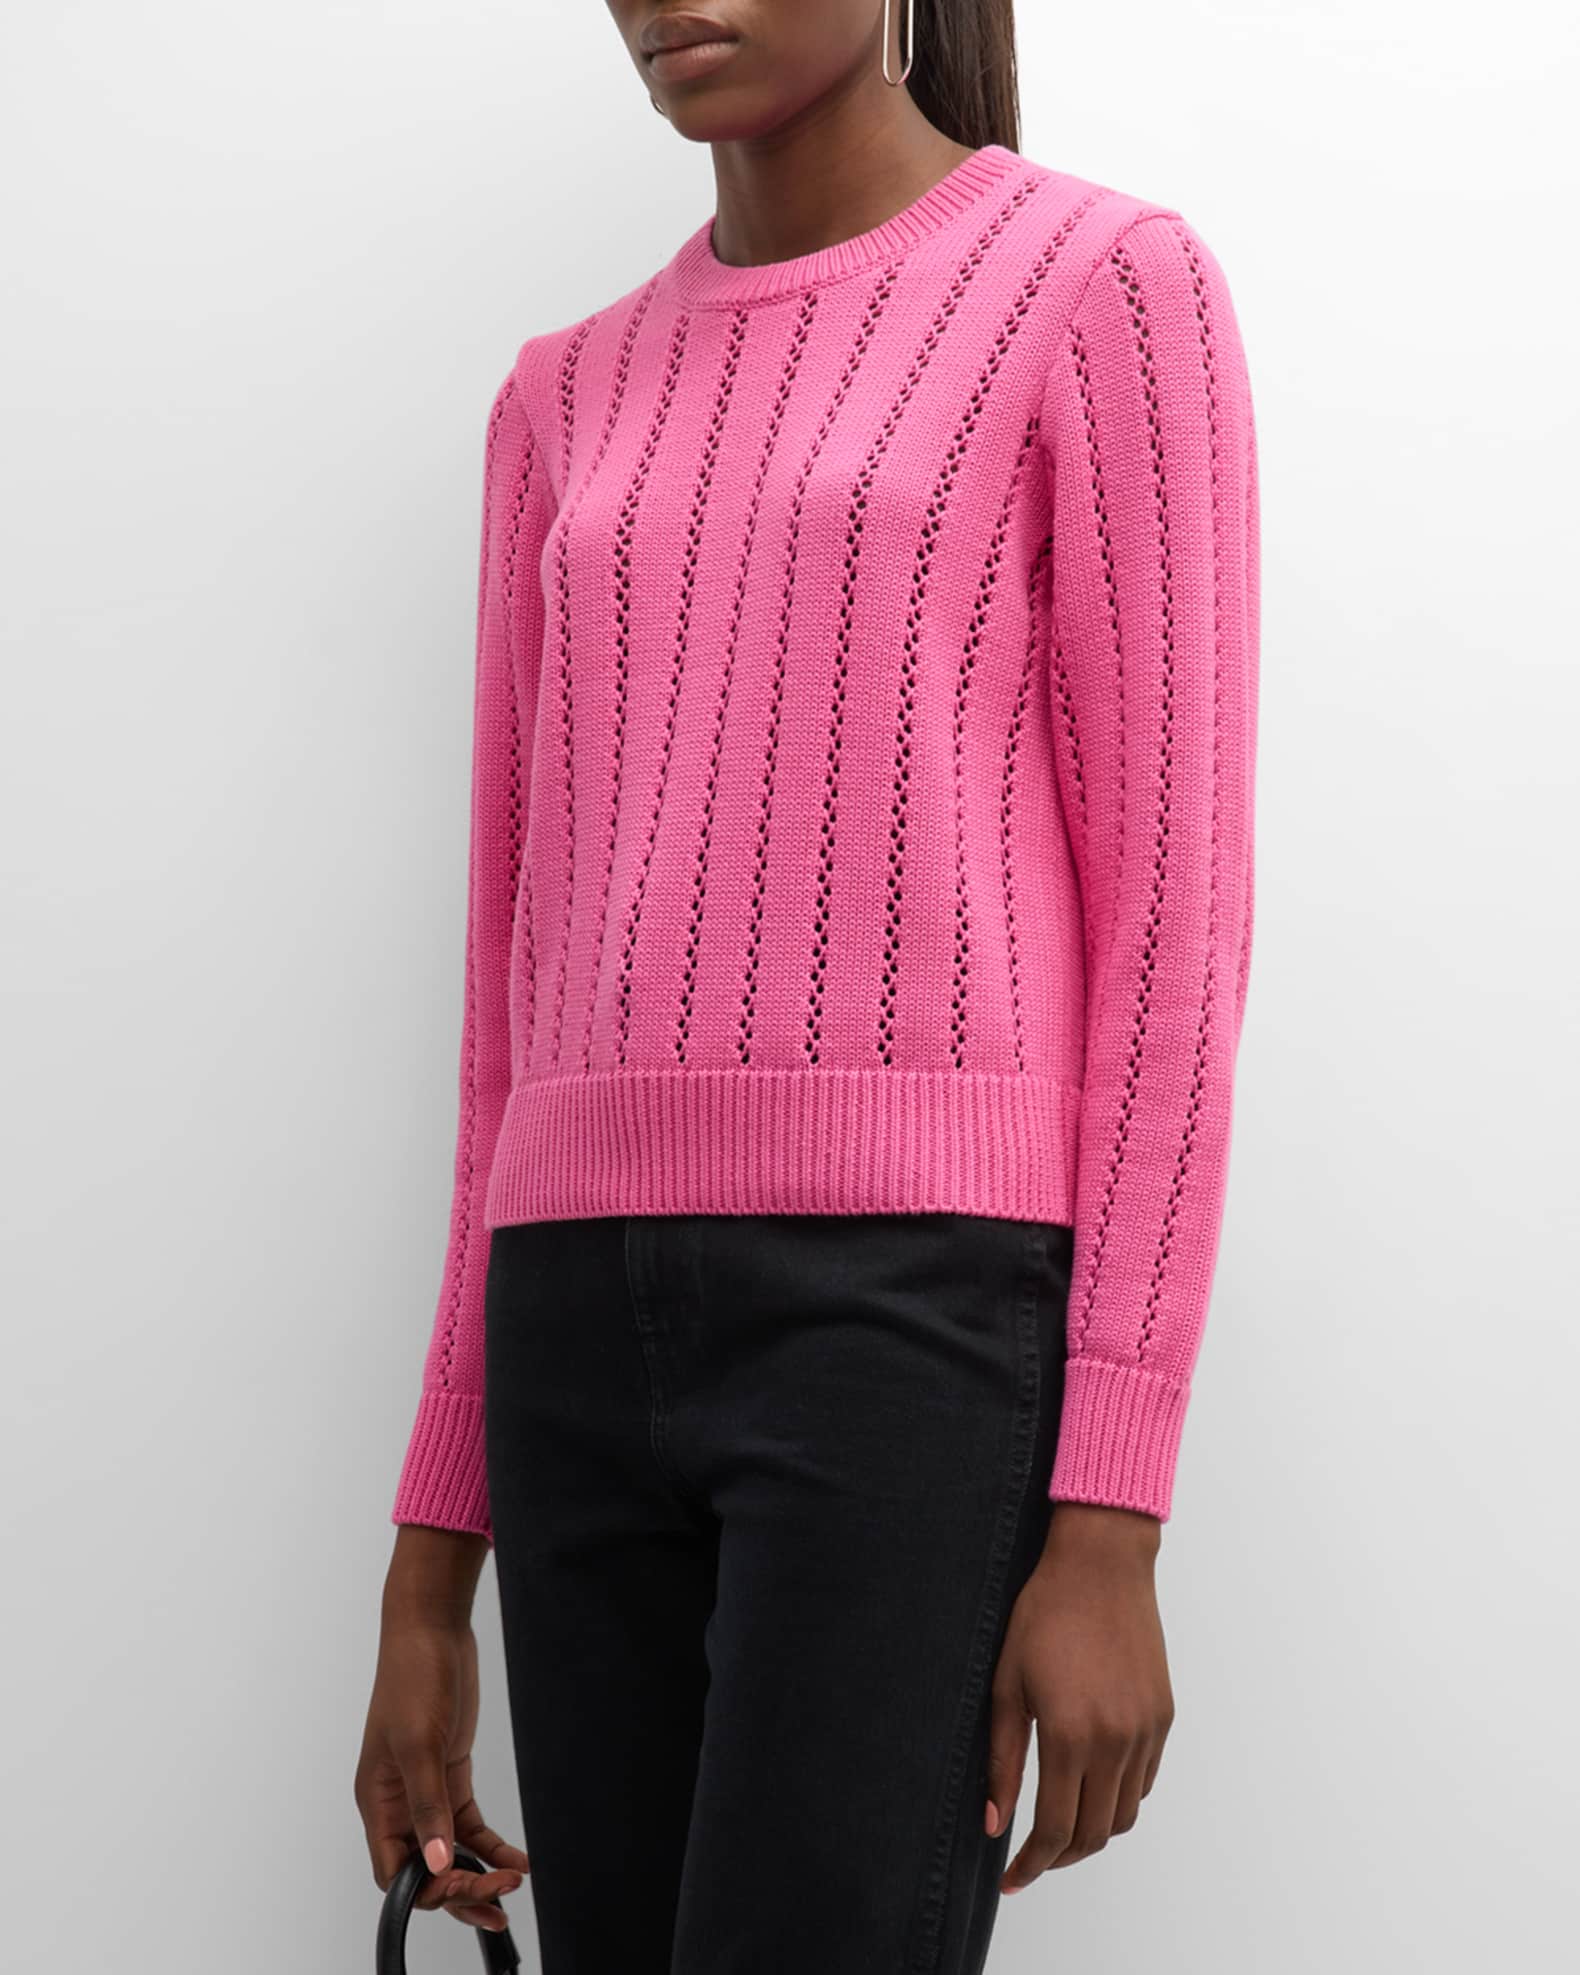 HOT Louis Vuitton Luxury Stitch Sweatshirt For Women